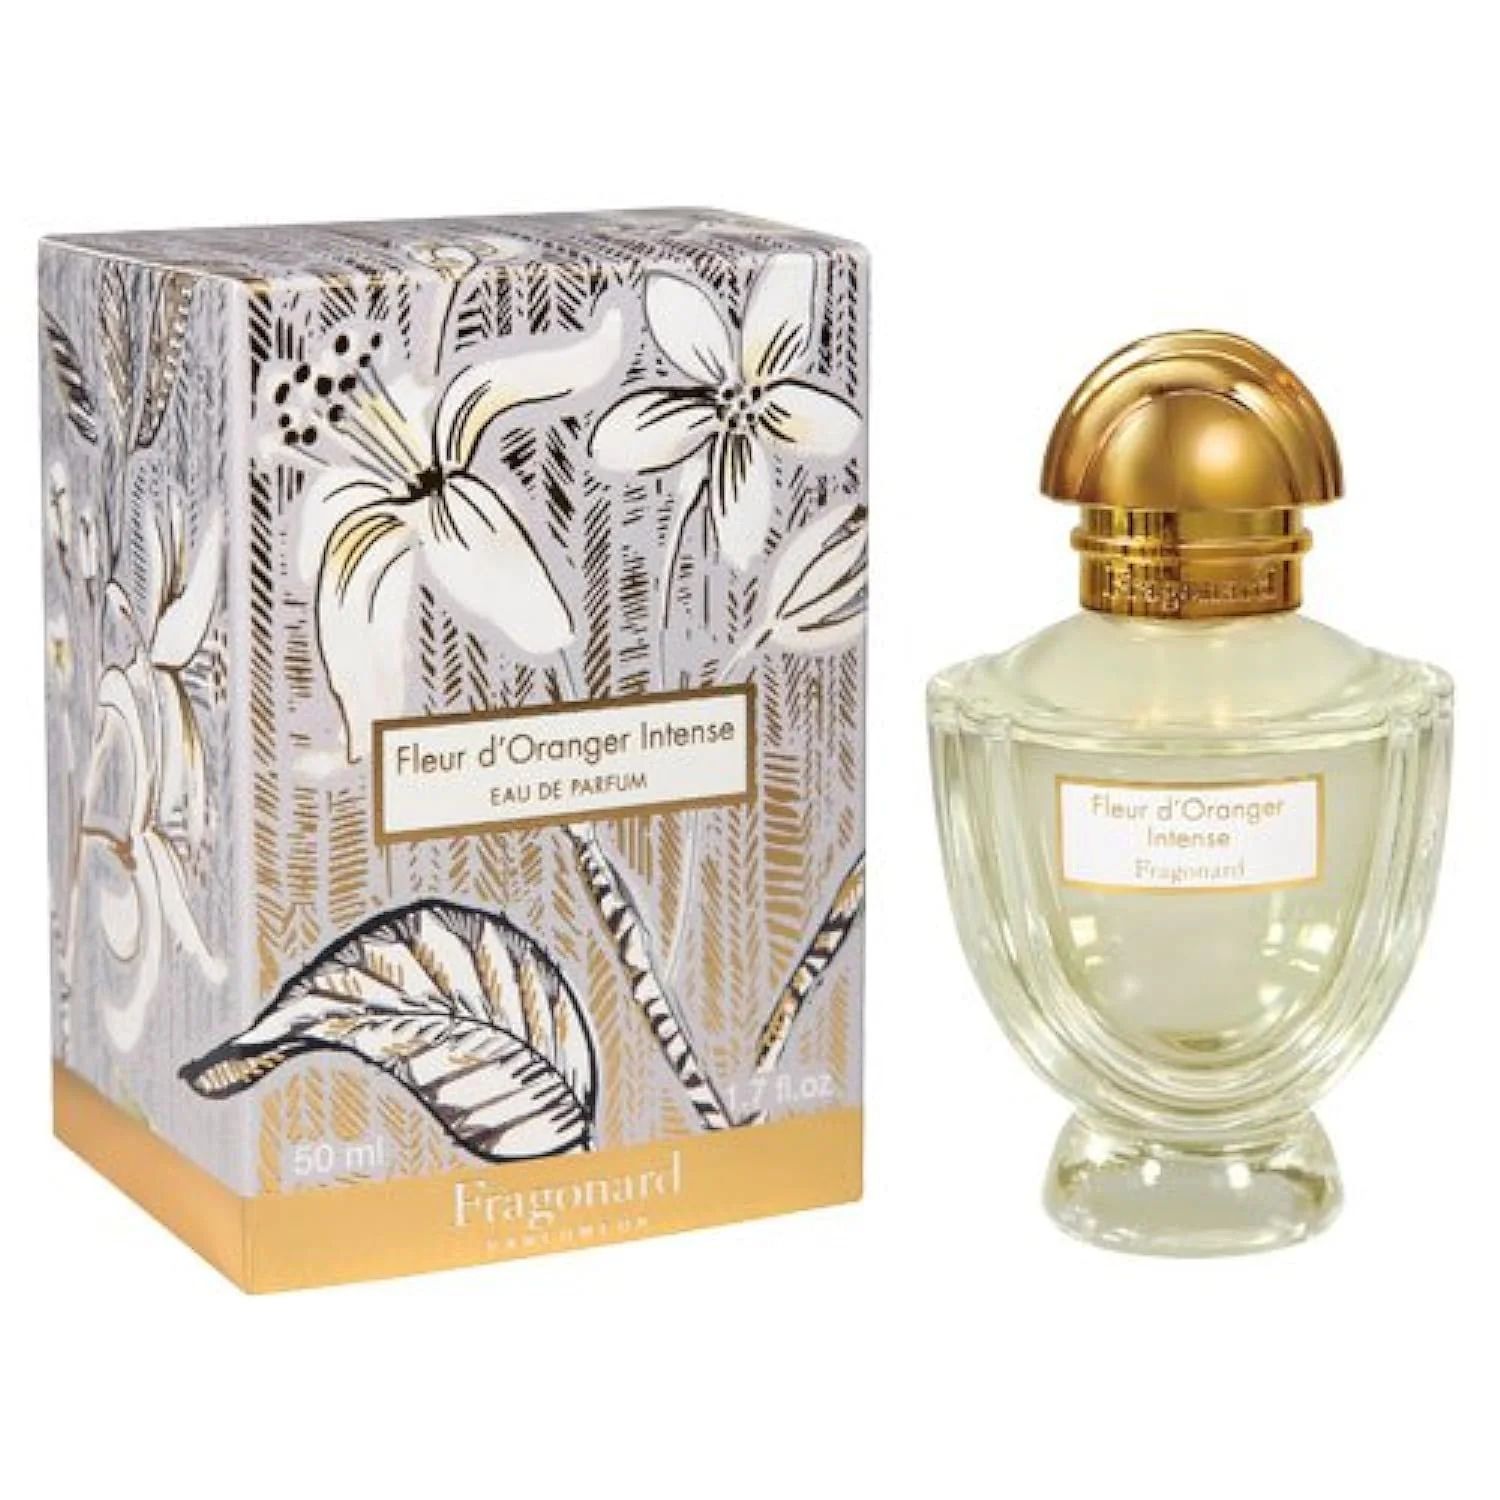 Fragonard Parfumeur Fleur d'Oranger Intense Eau de Parfum - 50 ml | Walmart (US)